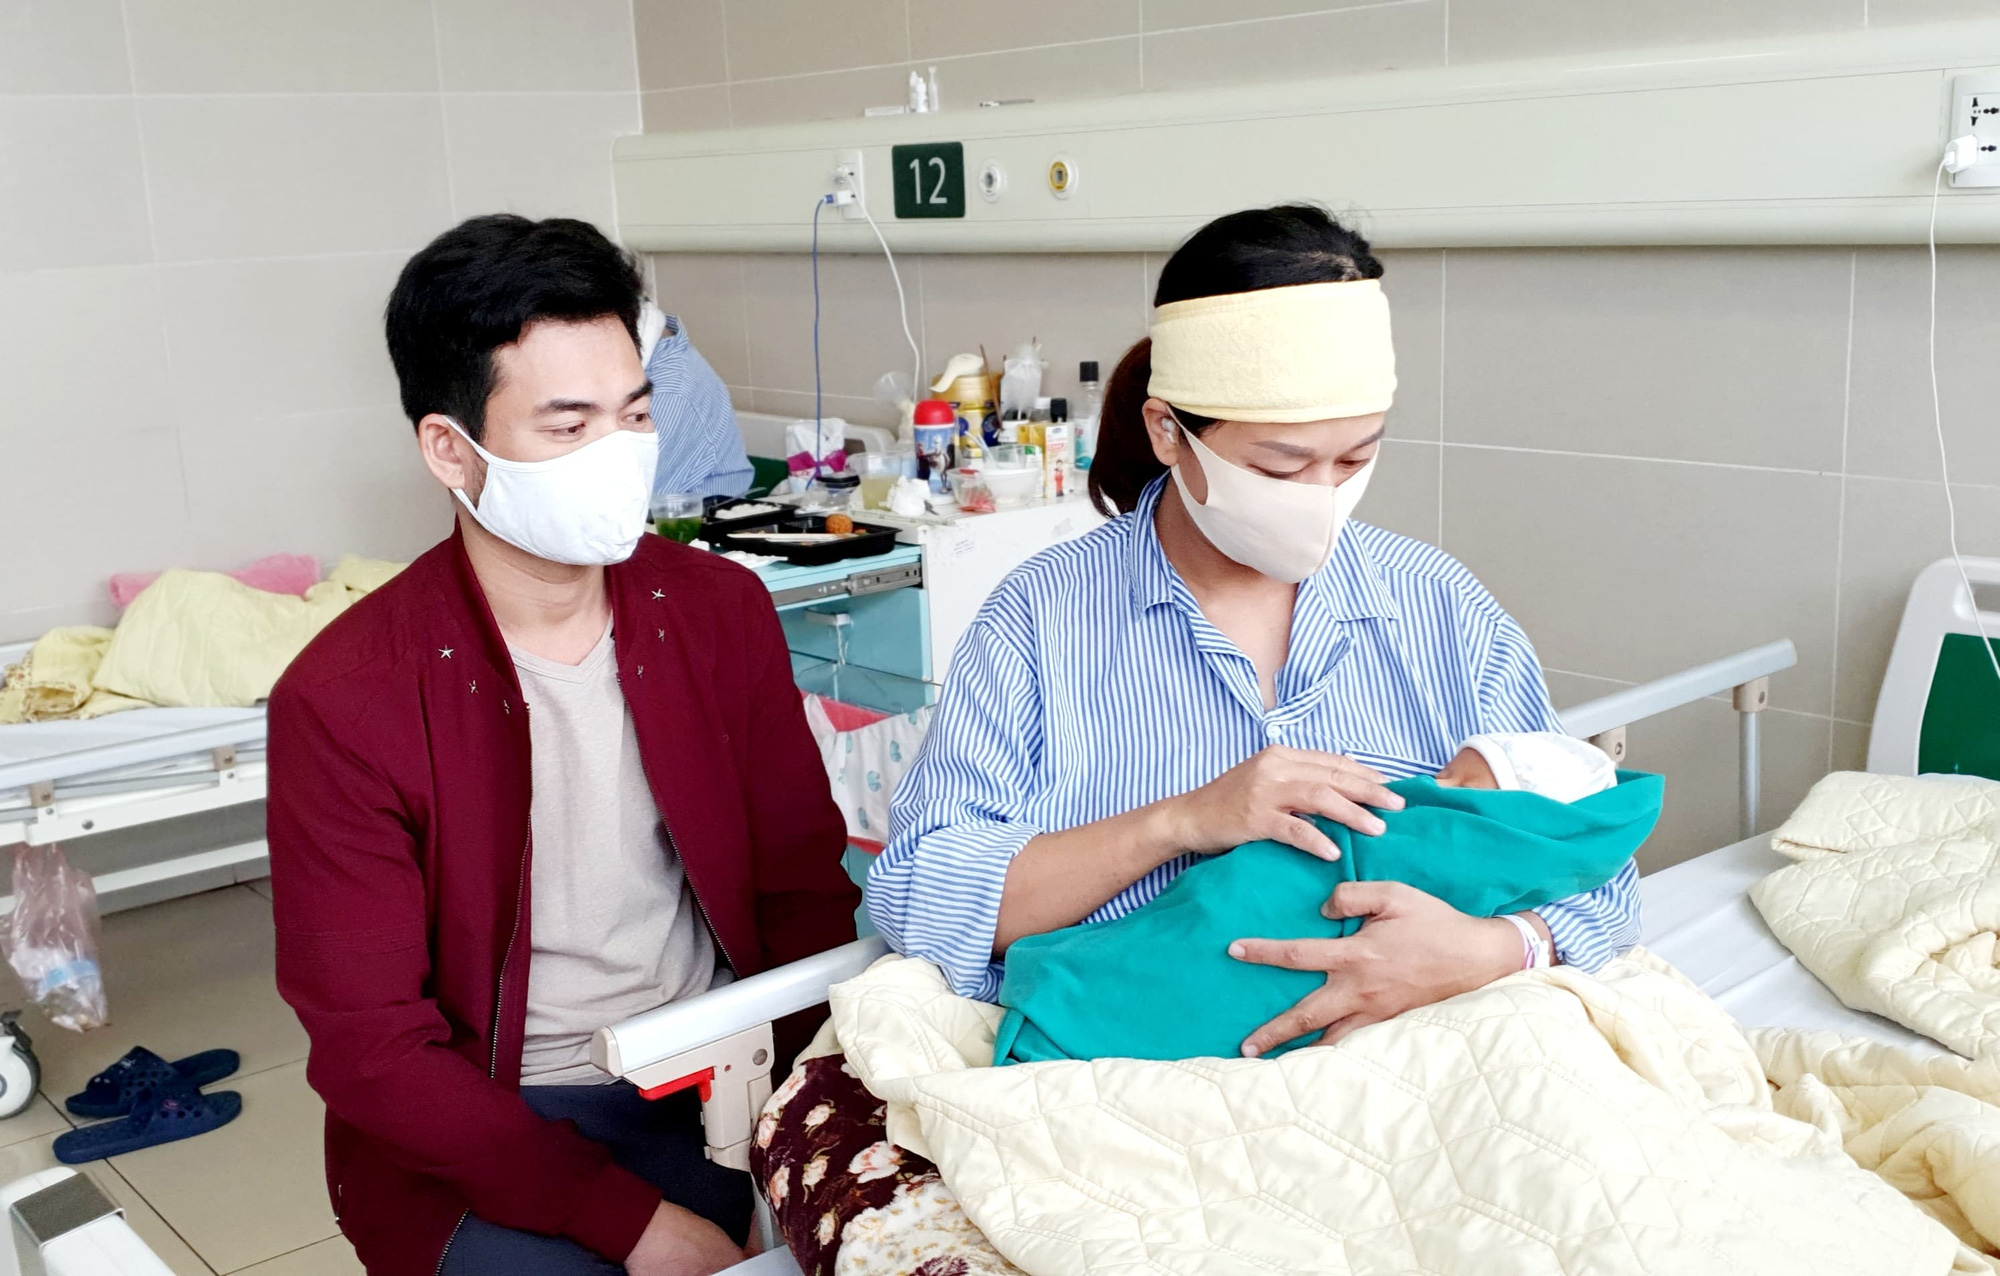 Tham khảo chi phí sinh đẻ tại 7 bệnh viện uy tín nhất Hà Nội